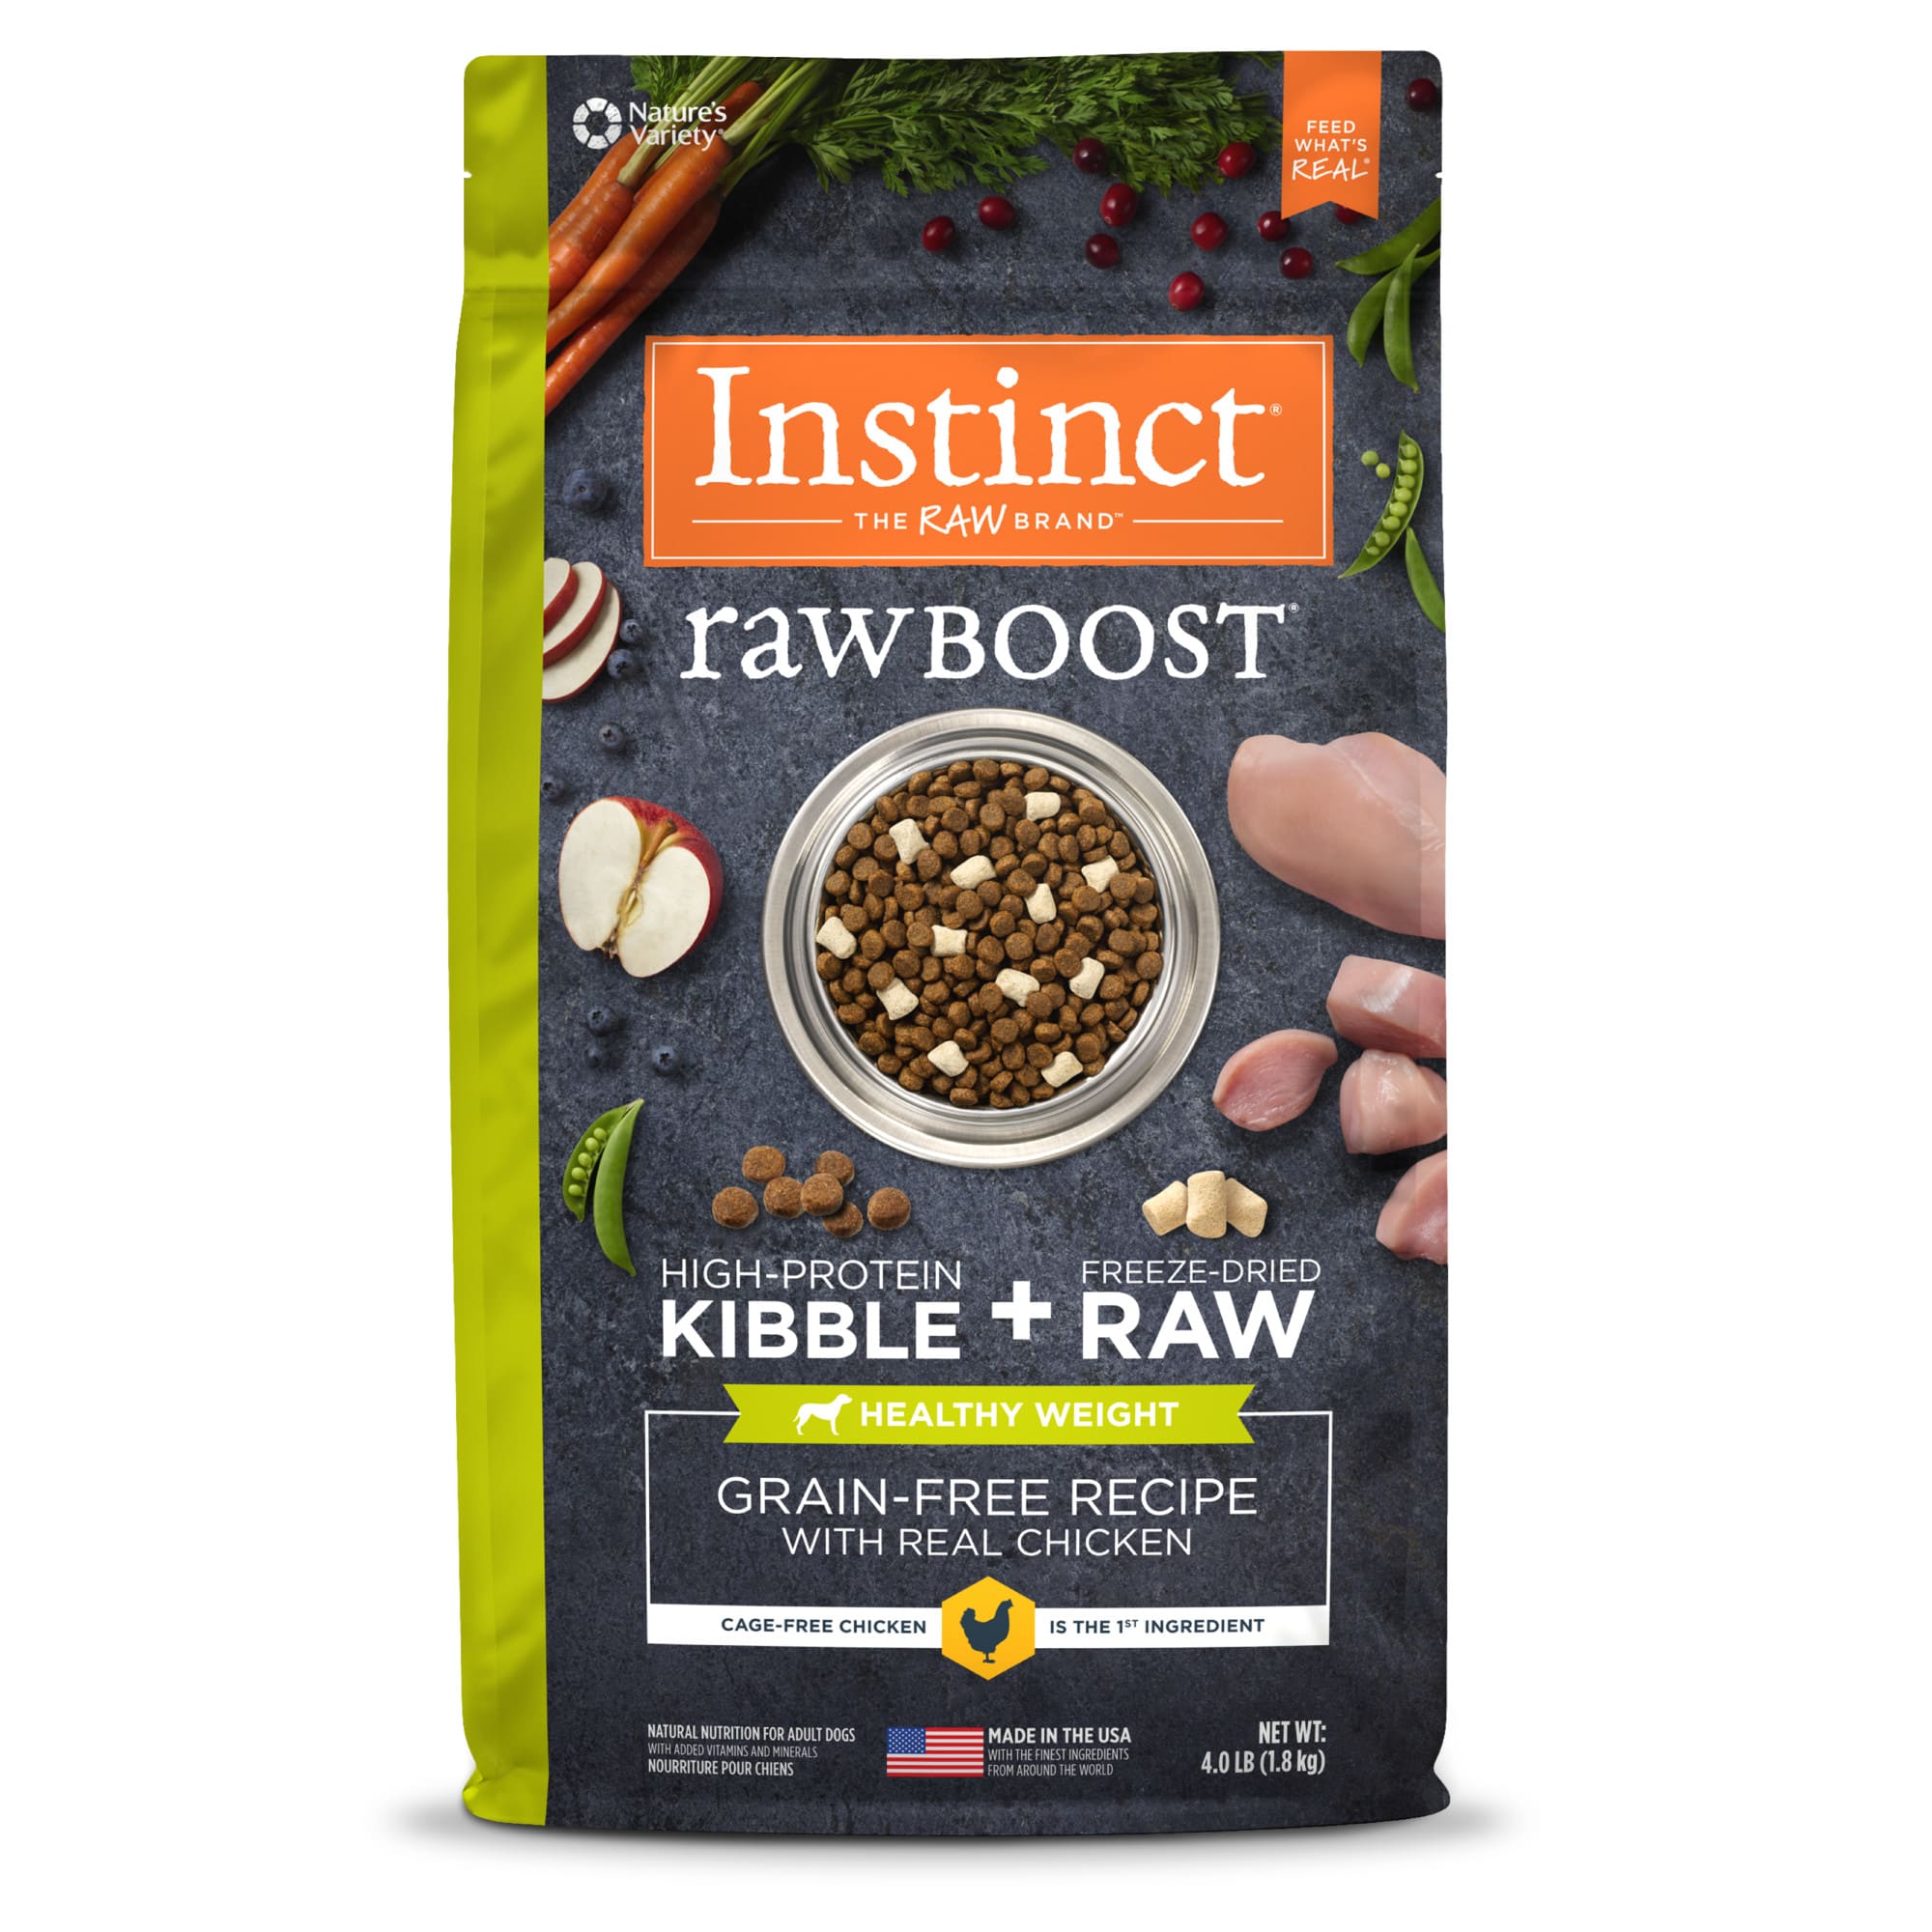 Instinct Raw Boost Healthy Weight Grain